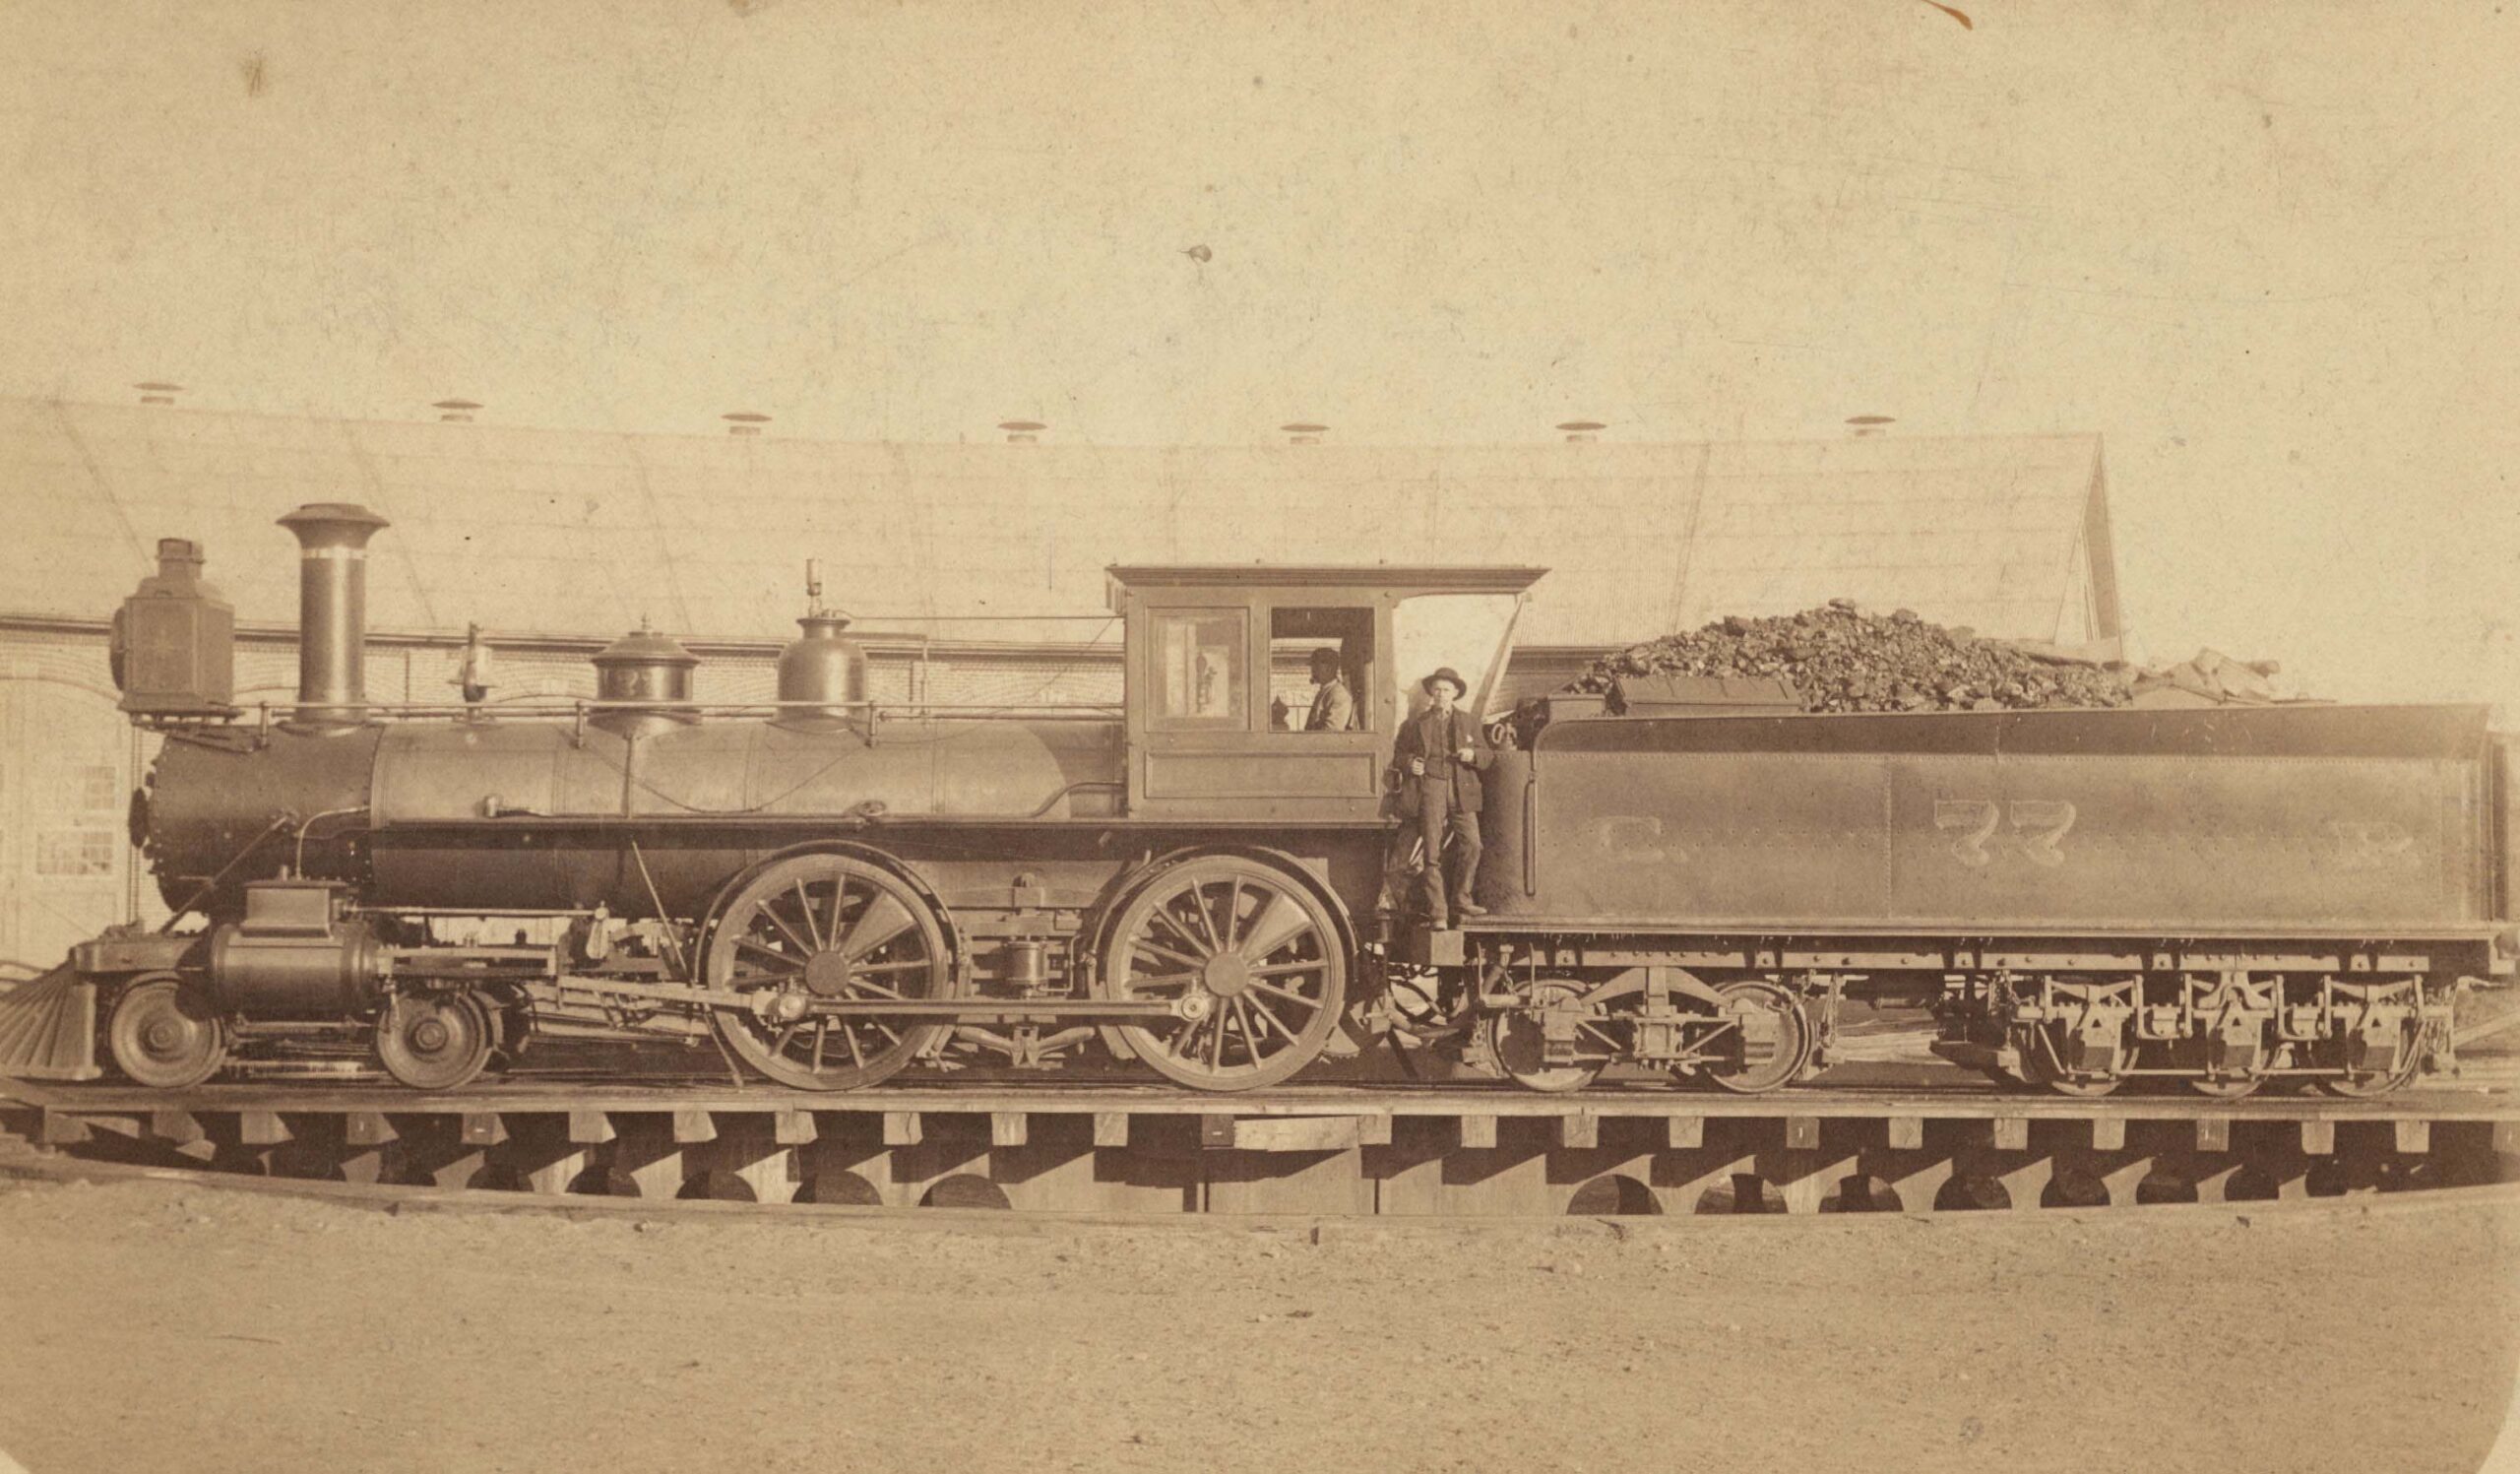 Central Pacific Railroad steam locomotive No. 77 and crew, 1888